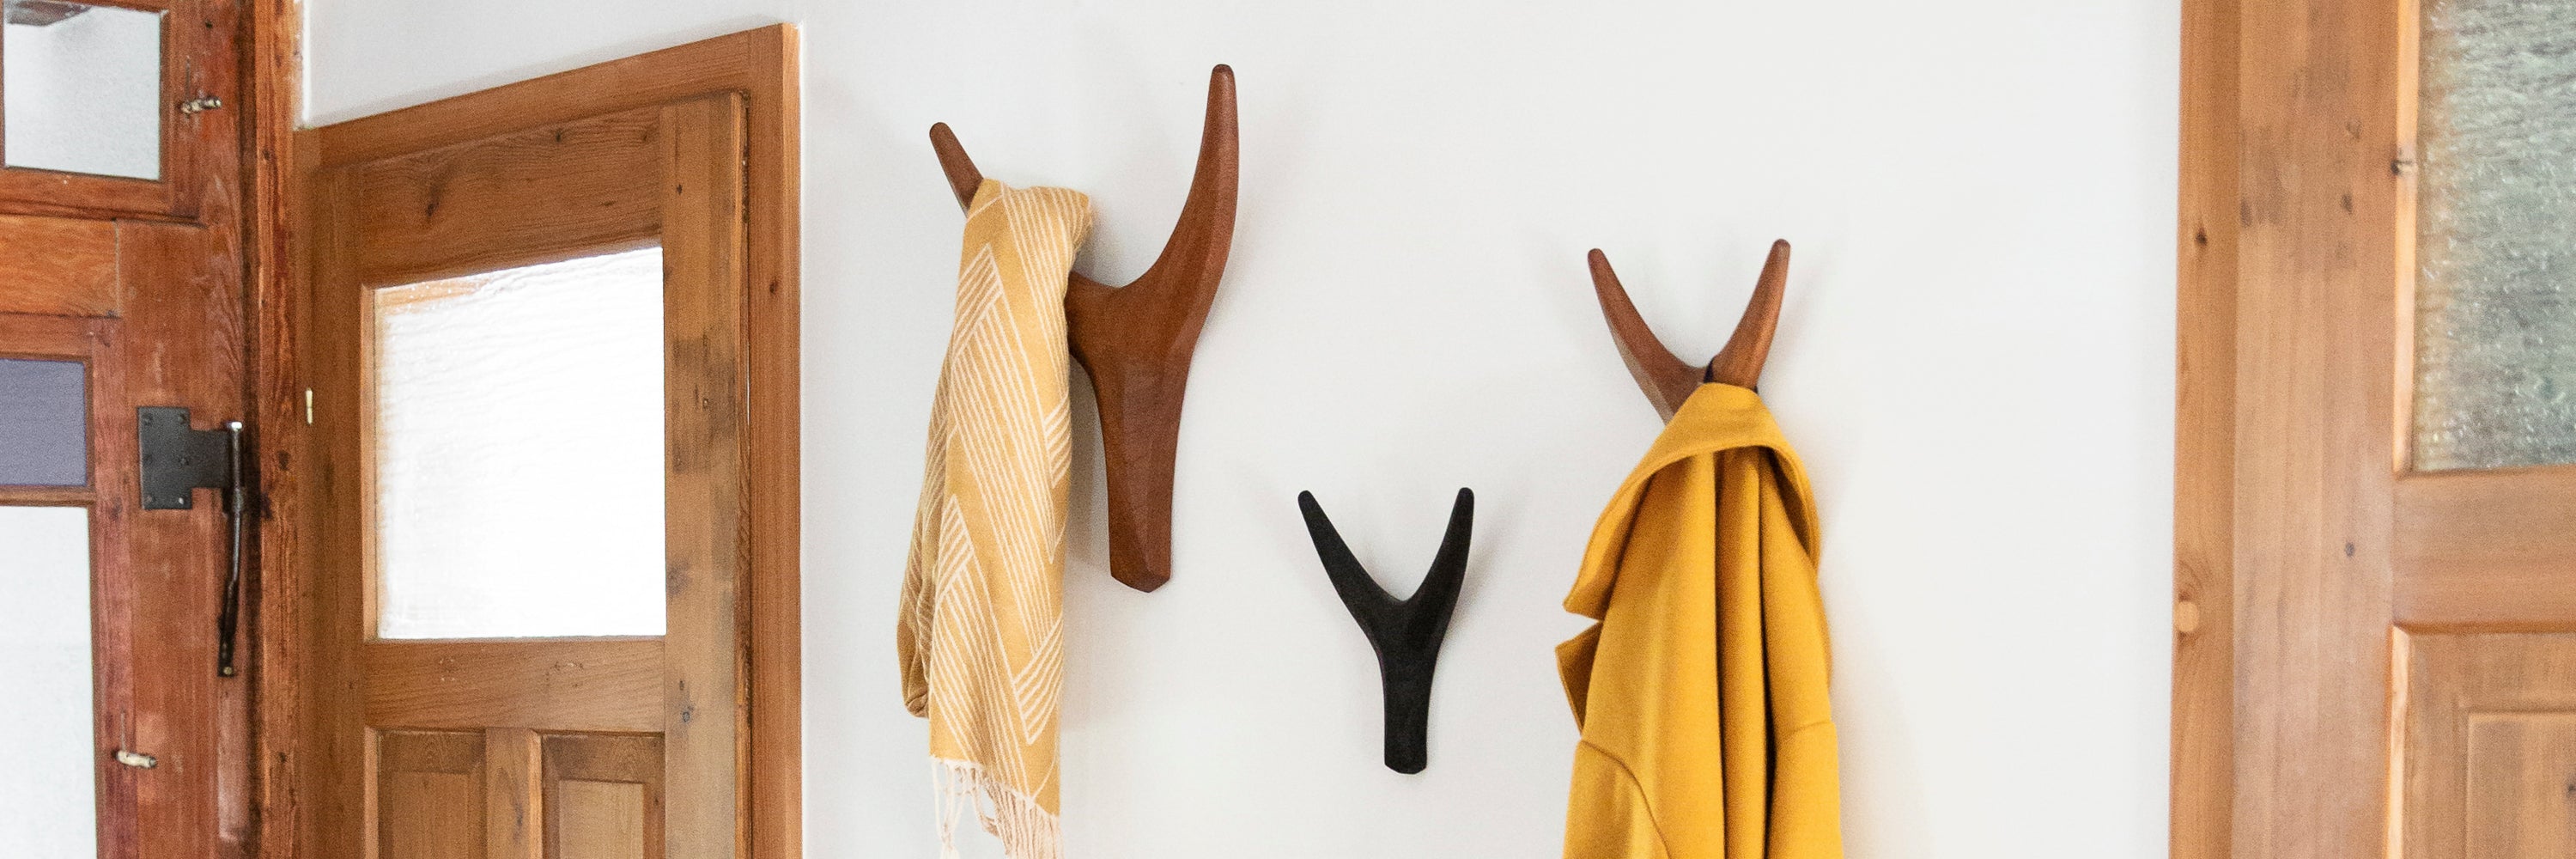 Garderobe mit Haken aus Holz in Nguni Form